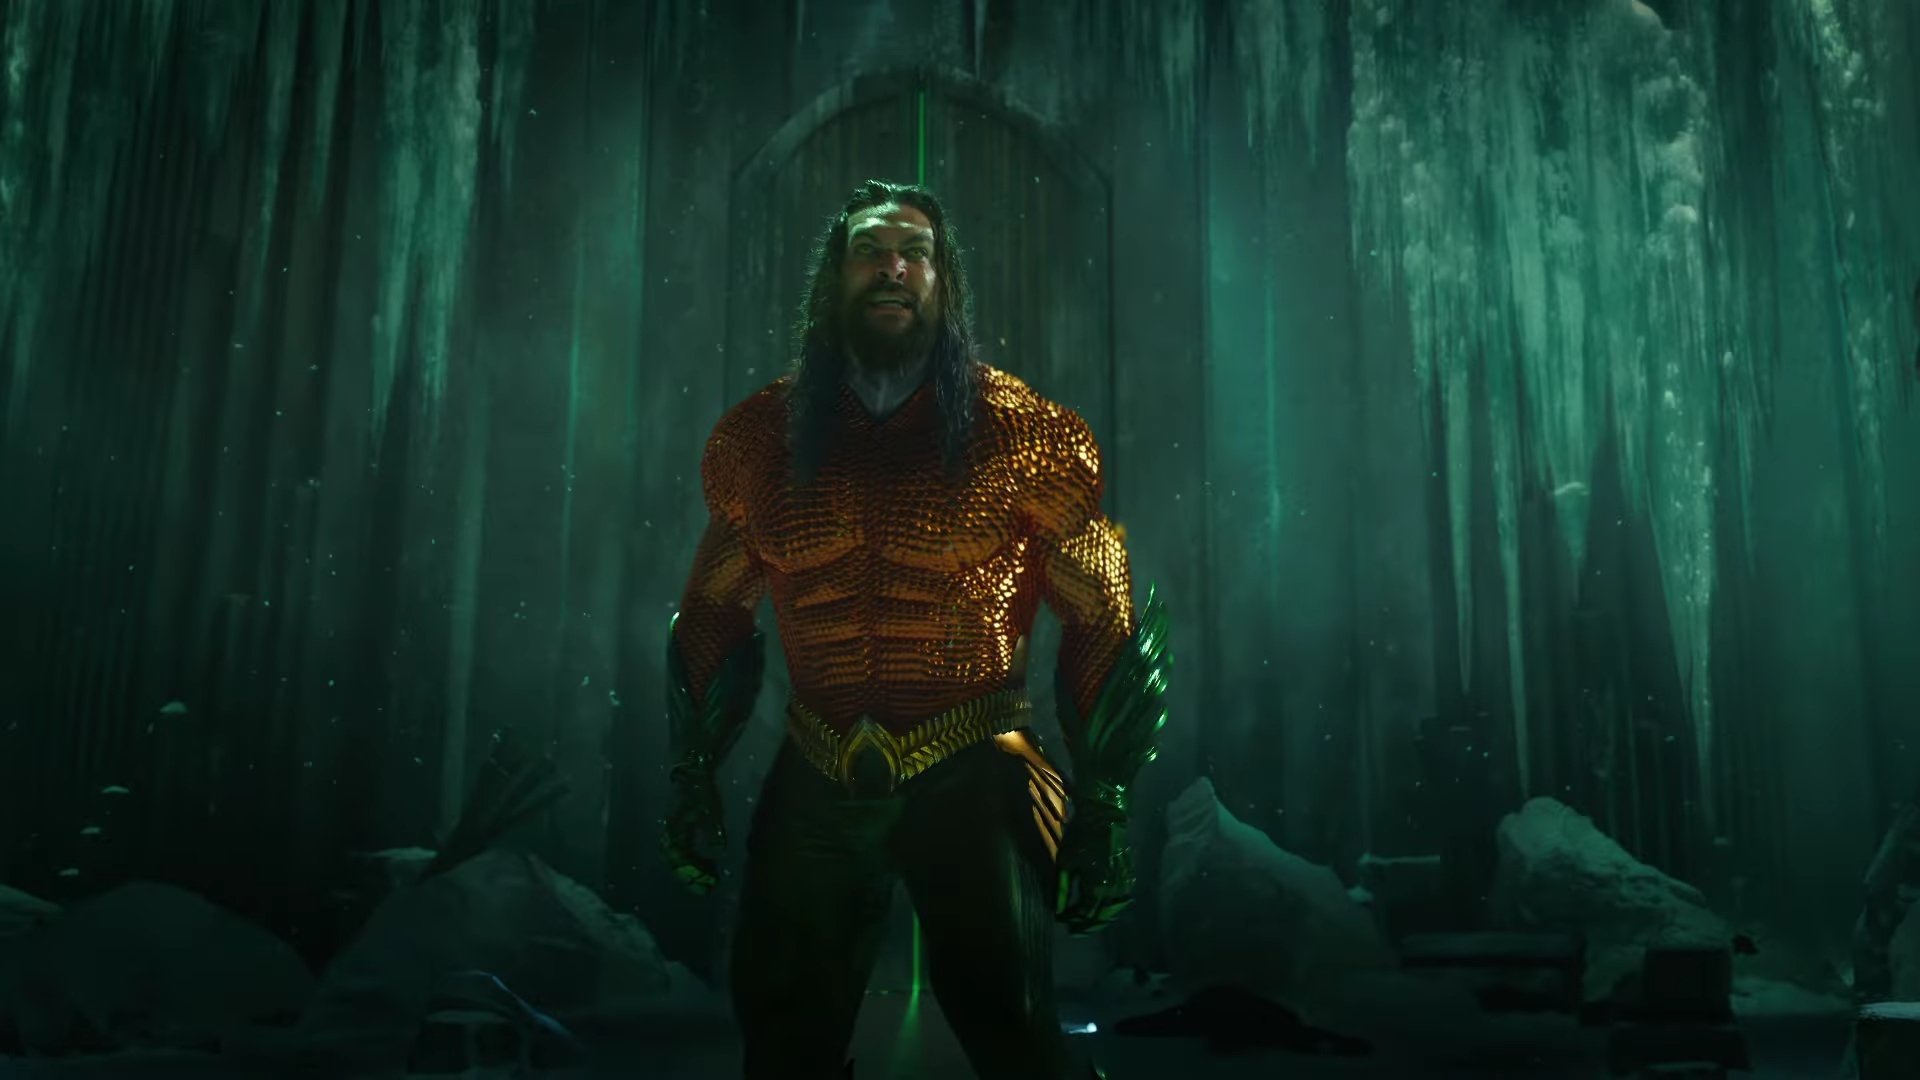 تریلر جدید فیلم Aquaman 2 با محوریت آخرین بازی جیسون موموآ در نقش آکوامن